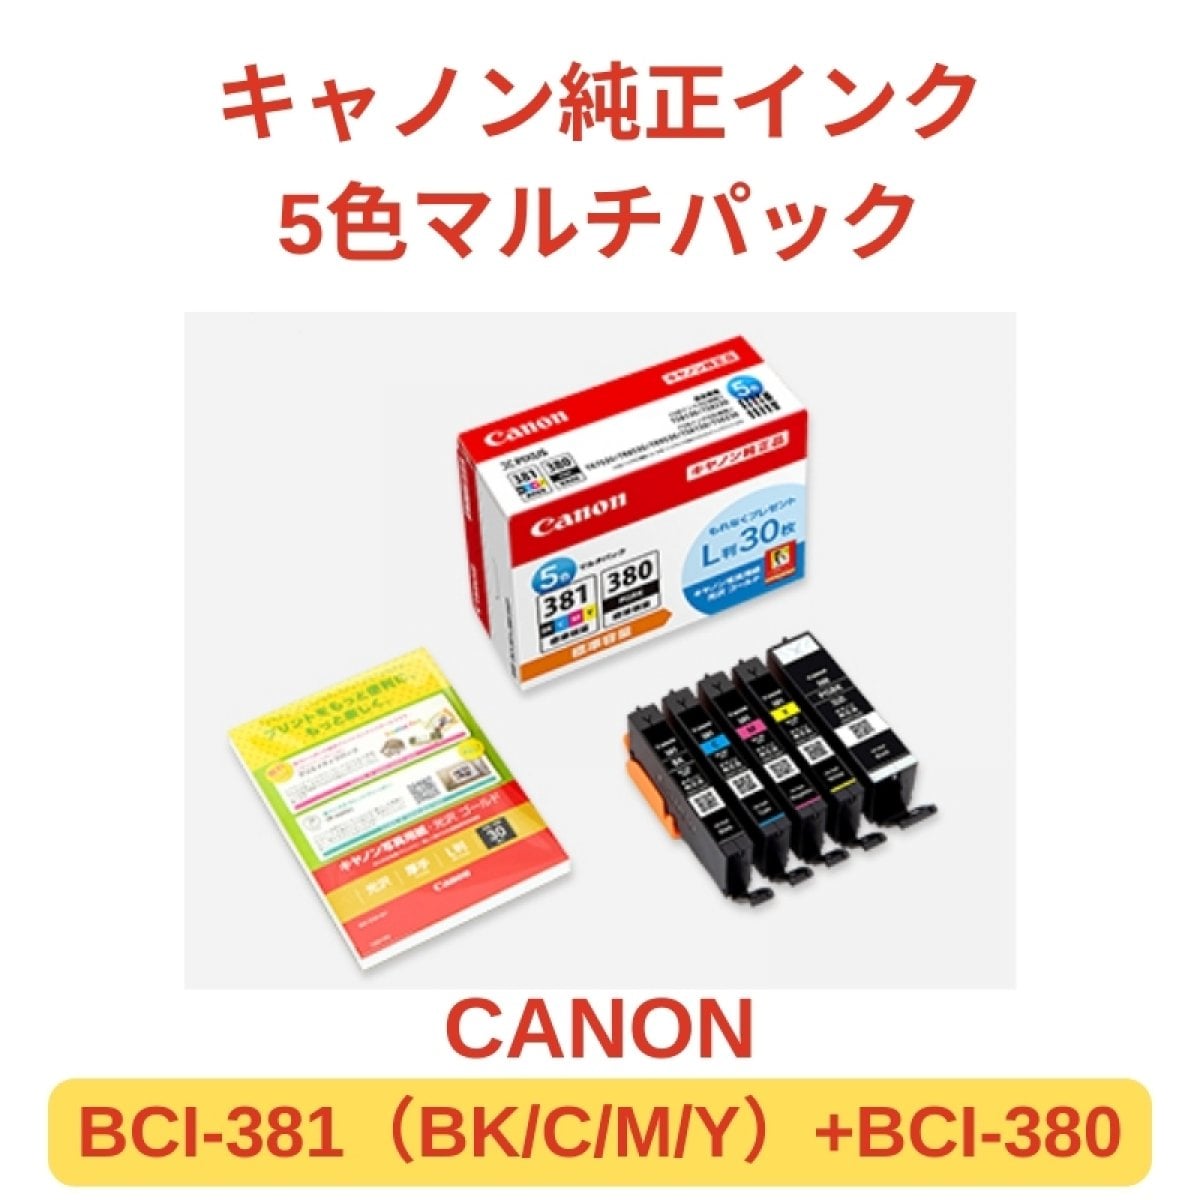 【CANON BCI-381+BCI-380】キャノン純正インクカートリッジ5色マルチパック１個【BCI-381（BK/C/M/Y）+BCI-380】